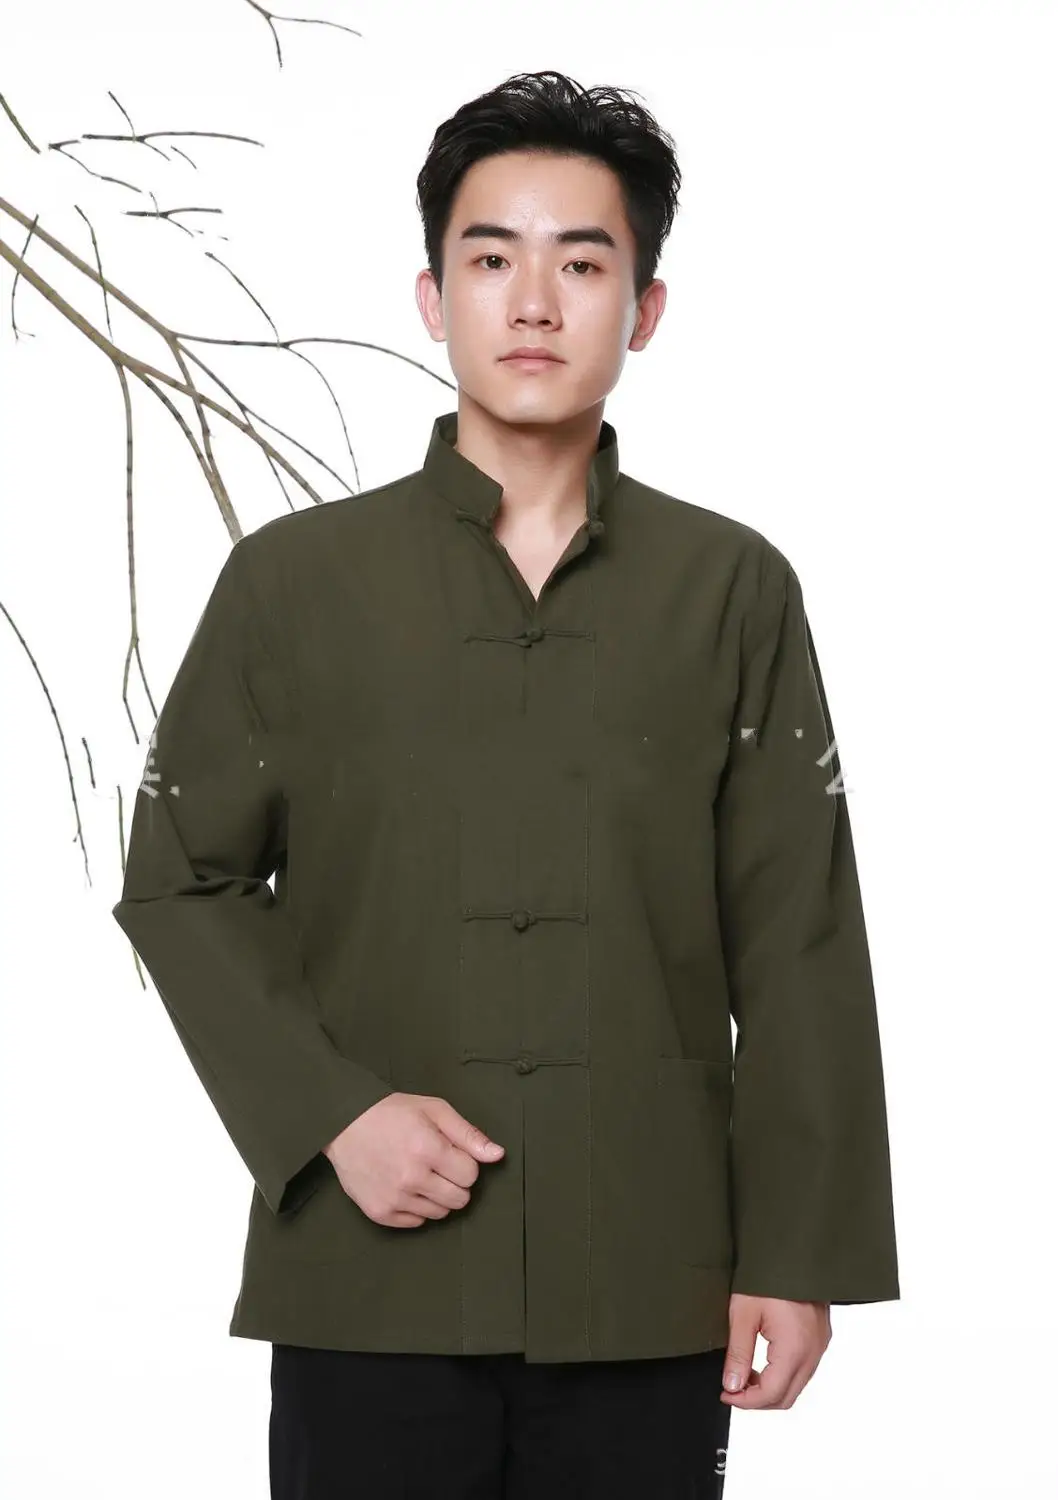 Женская одежда больших размеров китайский стиль китай китайская рубашка топы chinese traditional shirt одежда в китайском стиле wu tang китайская национальная одеждакитайская рубашка мужская китайский традиционный - Цвет: Зеленый